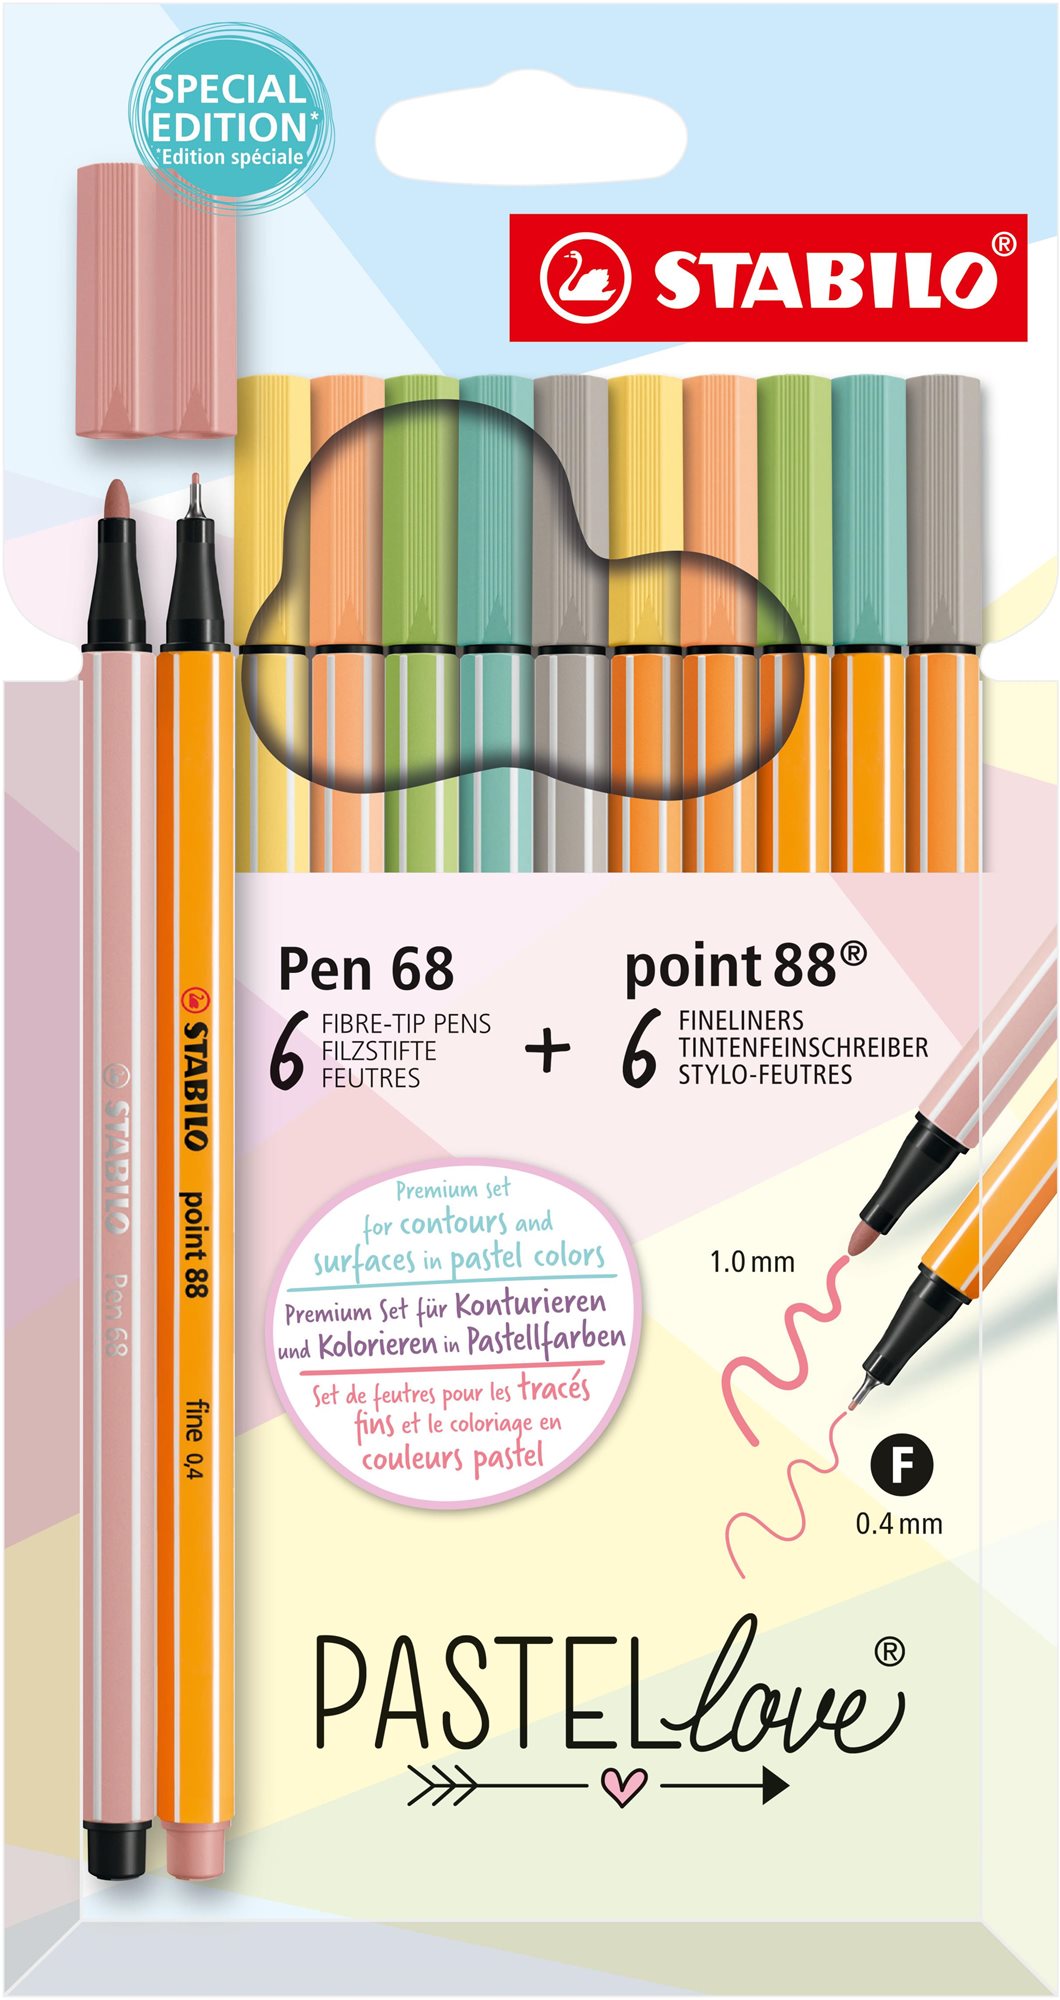 Írószer készlet STABILO point 88 & STABILO Pen 68 - Pastellove - 12 db-os készlet - 6 db point 88, 6 db Pen 68